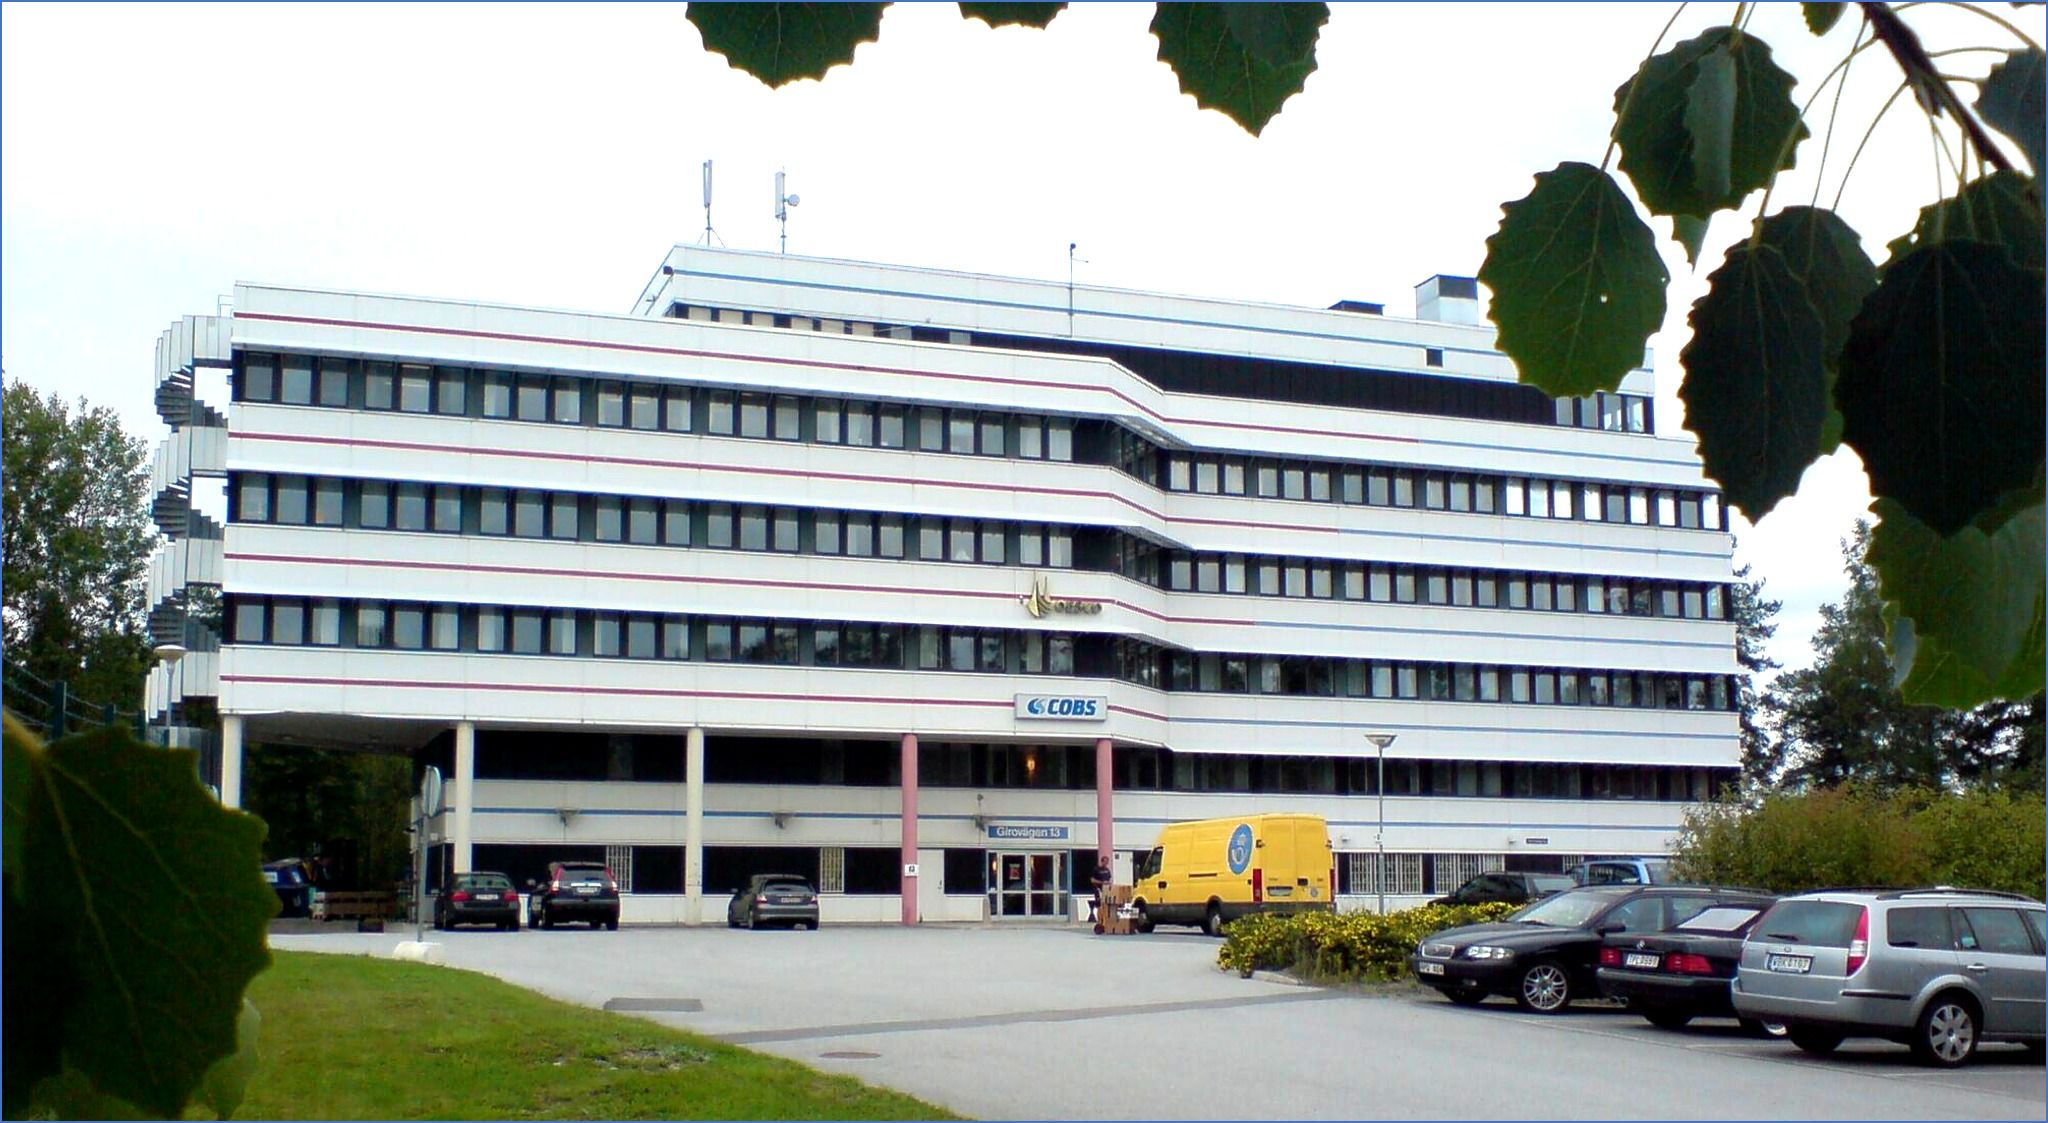 Figure 2:  Head office of cadett ab in Järfälla, Stockholm, Sweden.